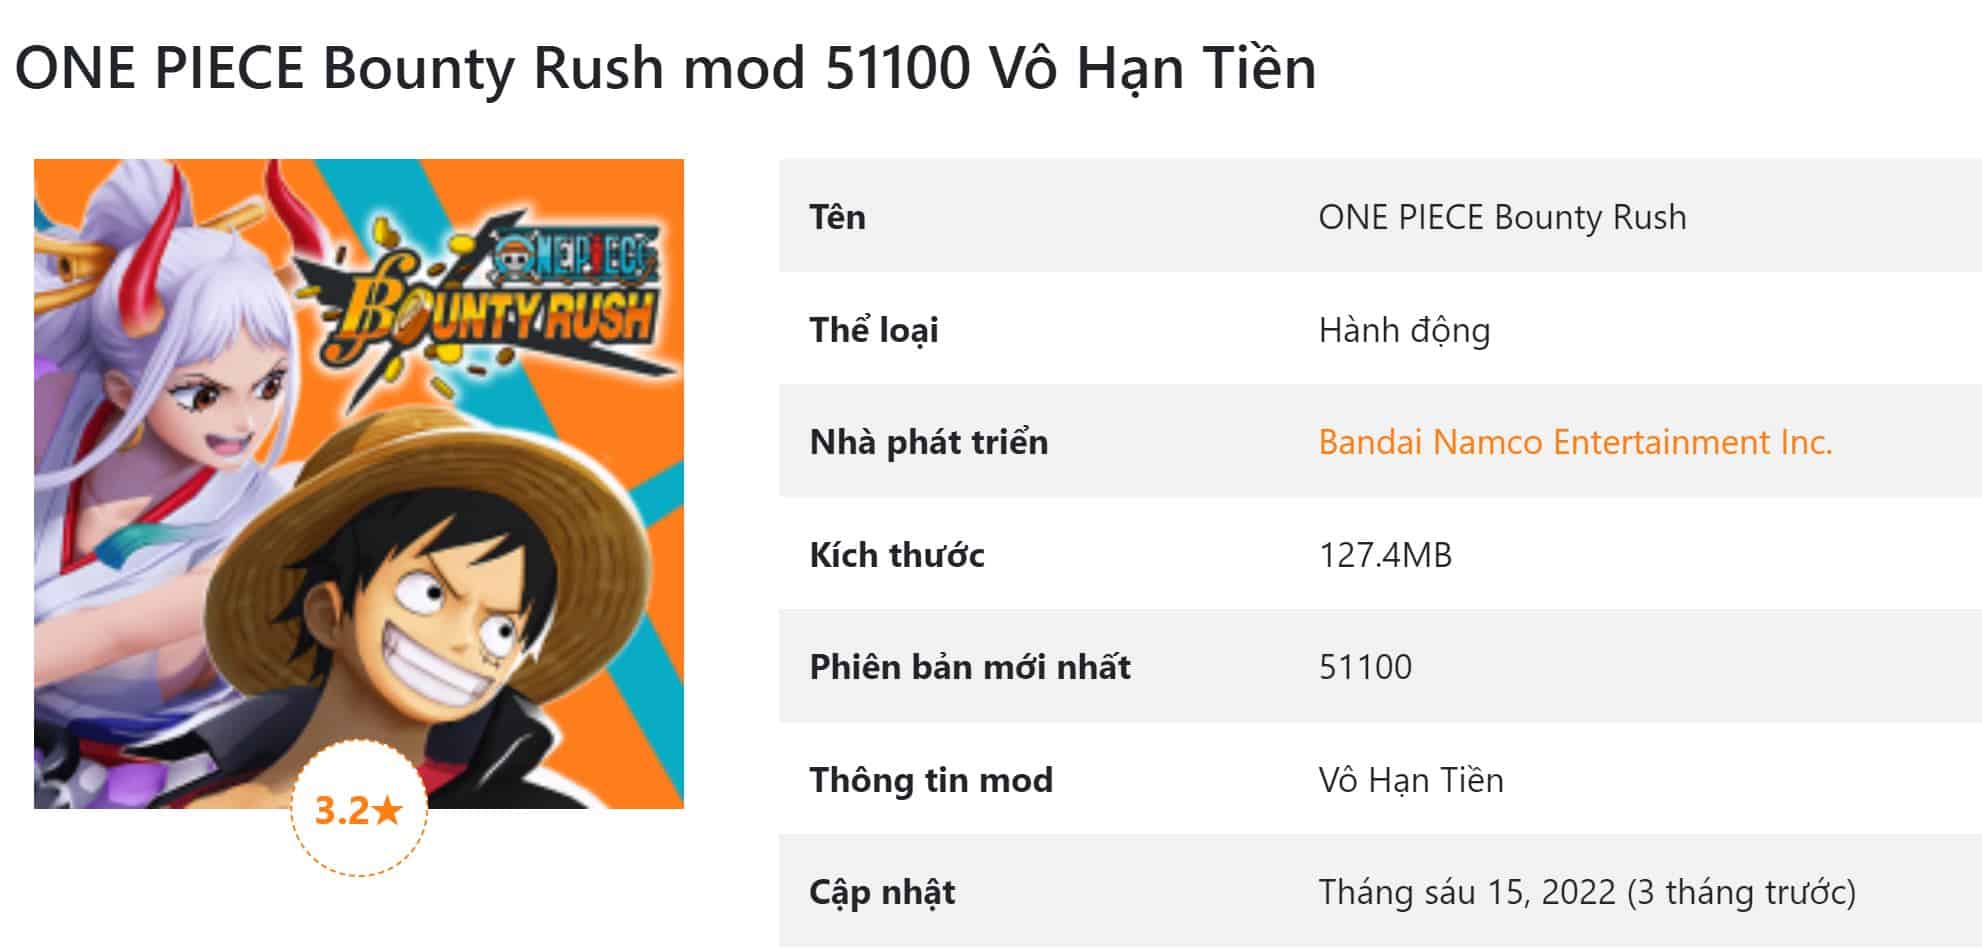 ONE PIECE Bounty Rush mod 51100 Vô Hạn Tiền